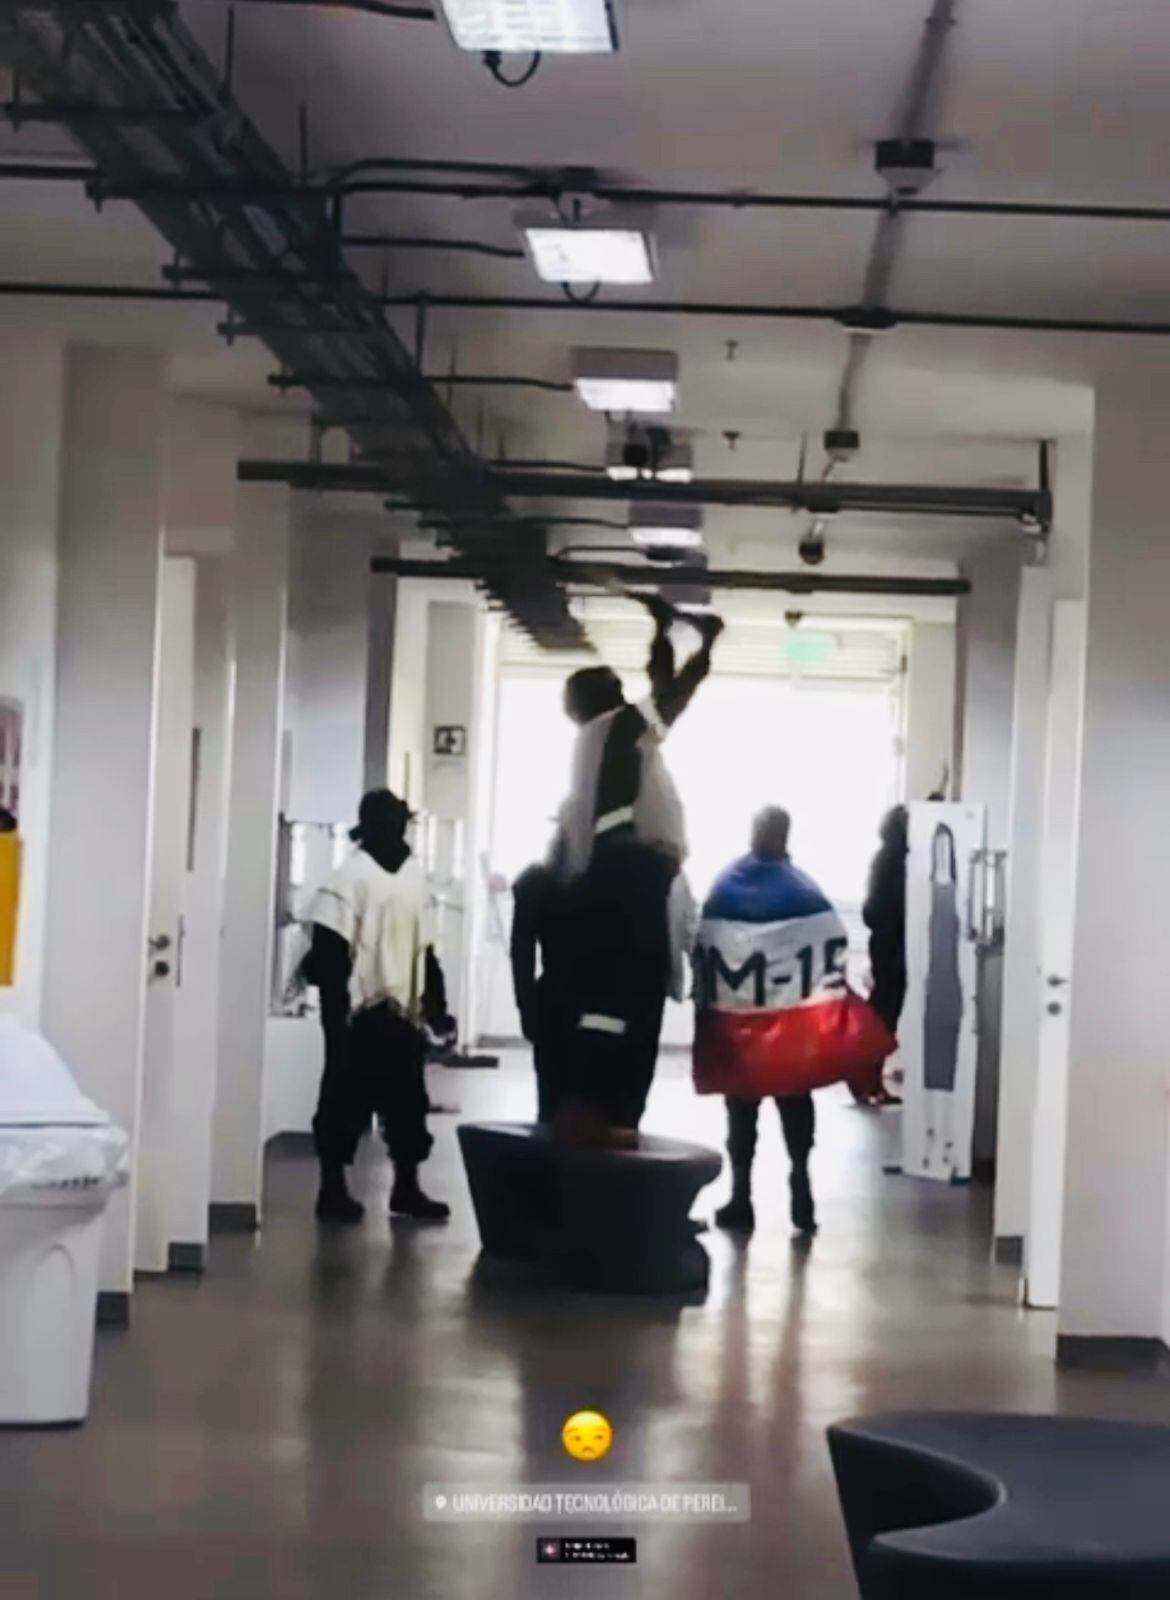 Encapuchados con bandera del M-19 sembraron terror en la Universidad Tecnológica de Pereira